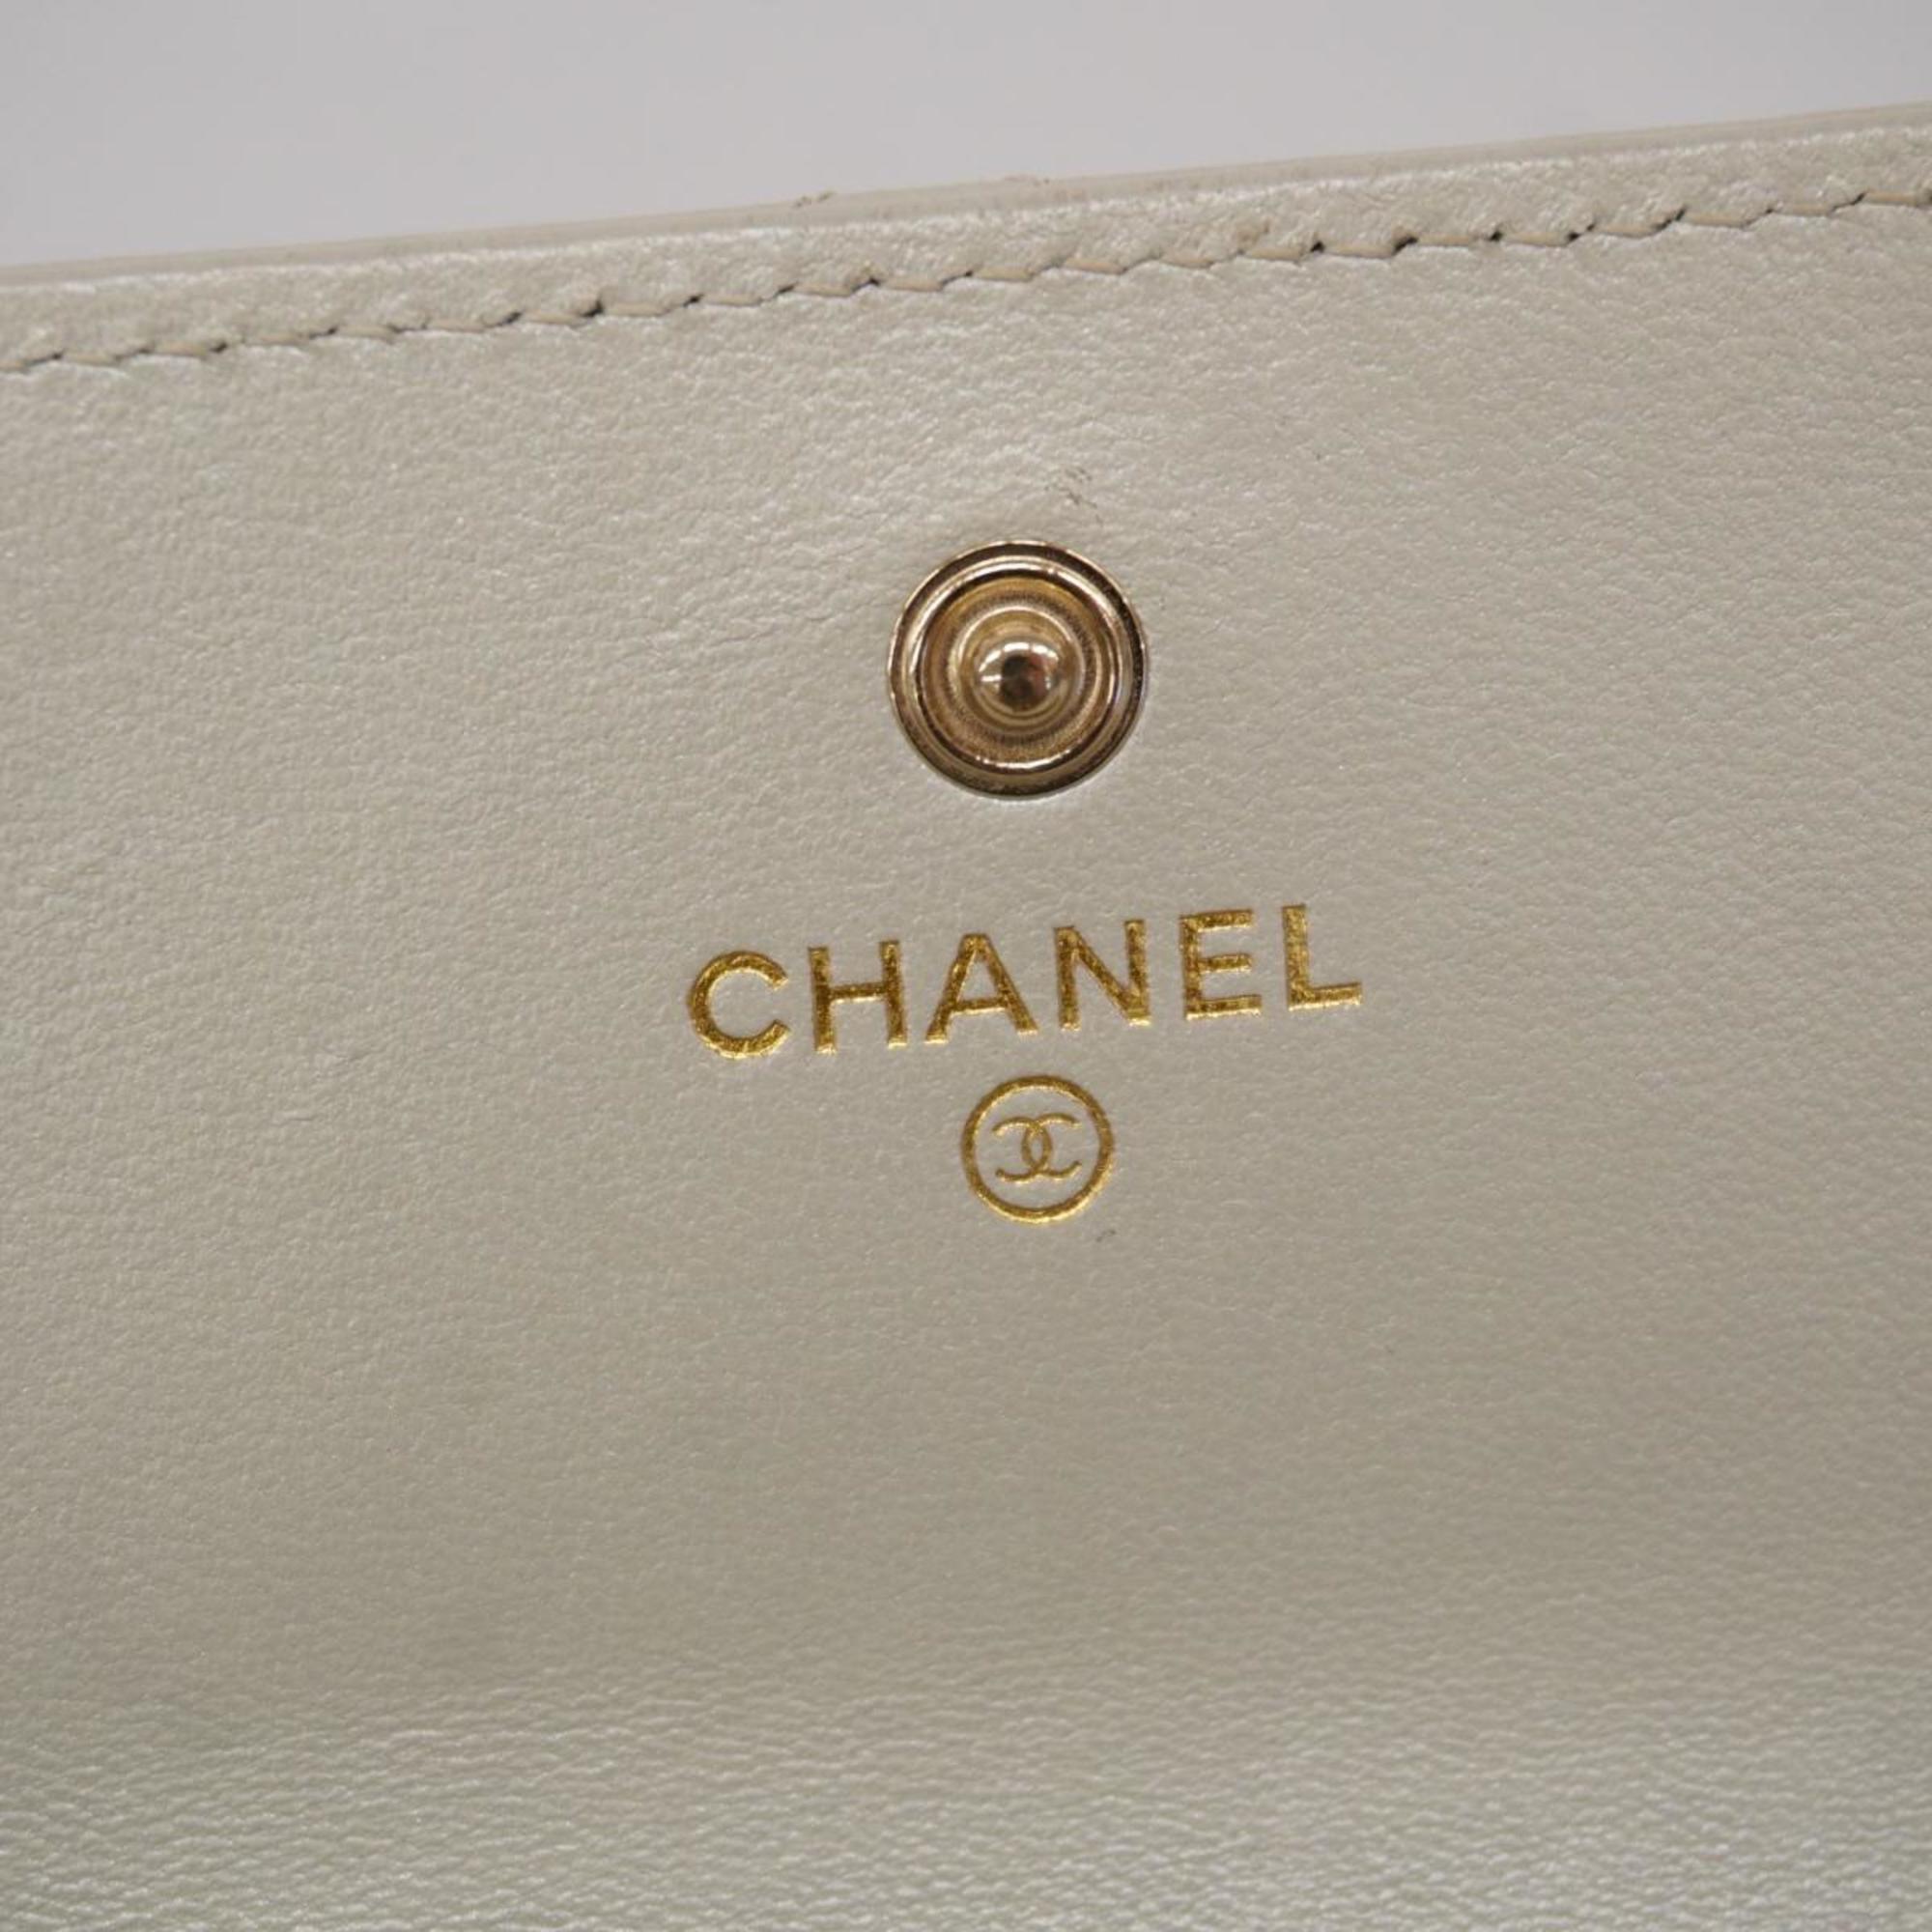 Chanel Long Wallet Matelasse Lambskin Grey Champagne Women's